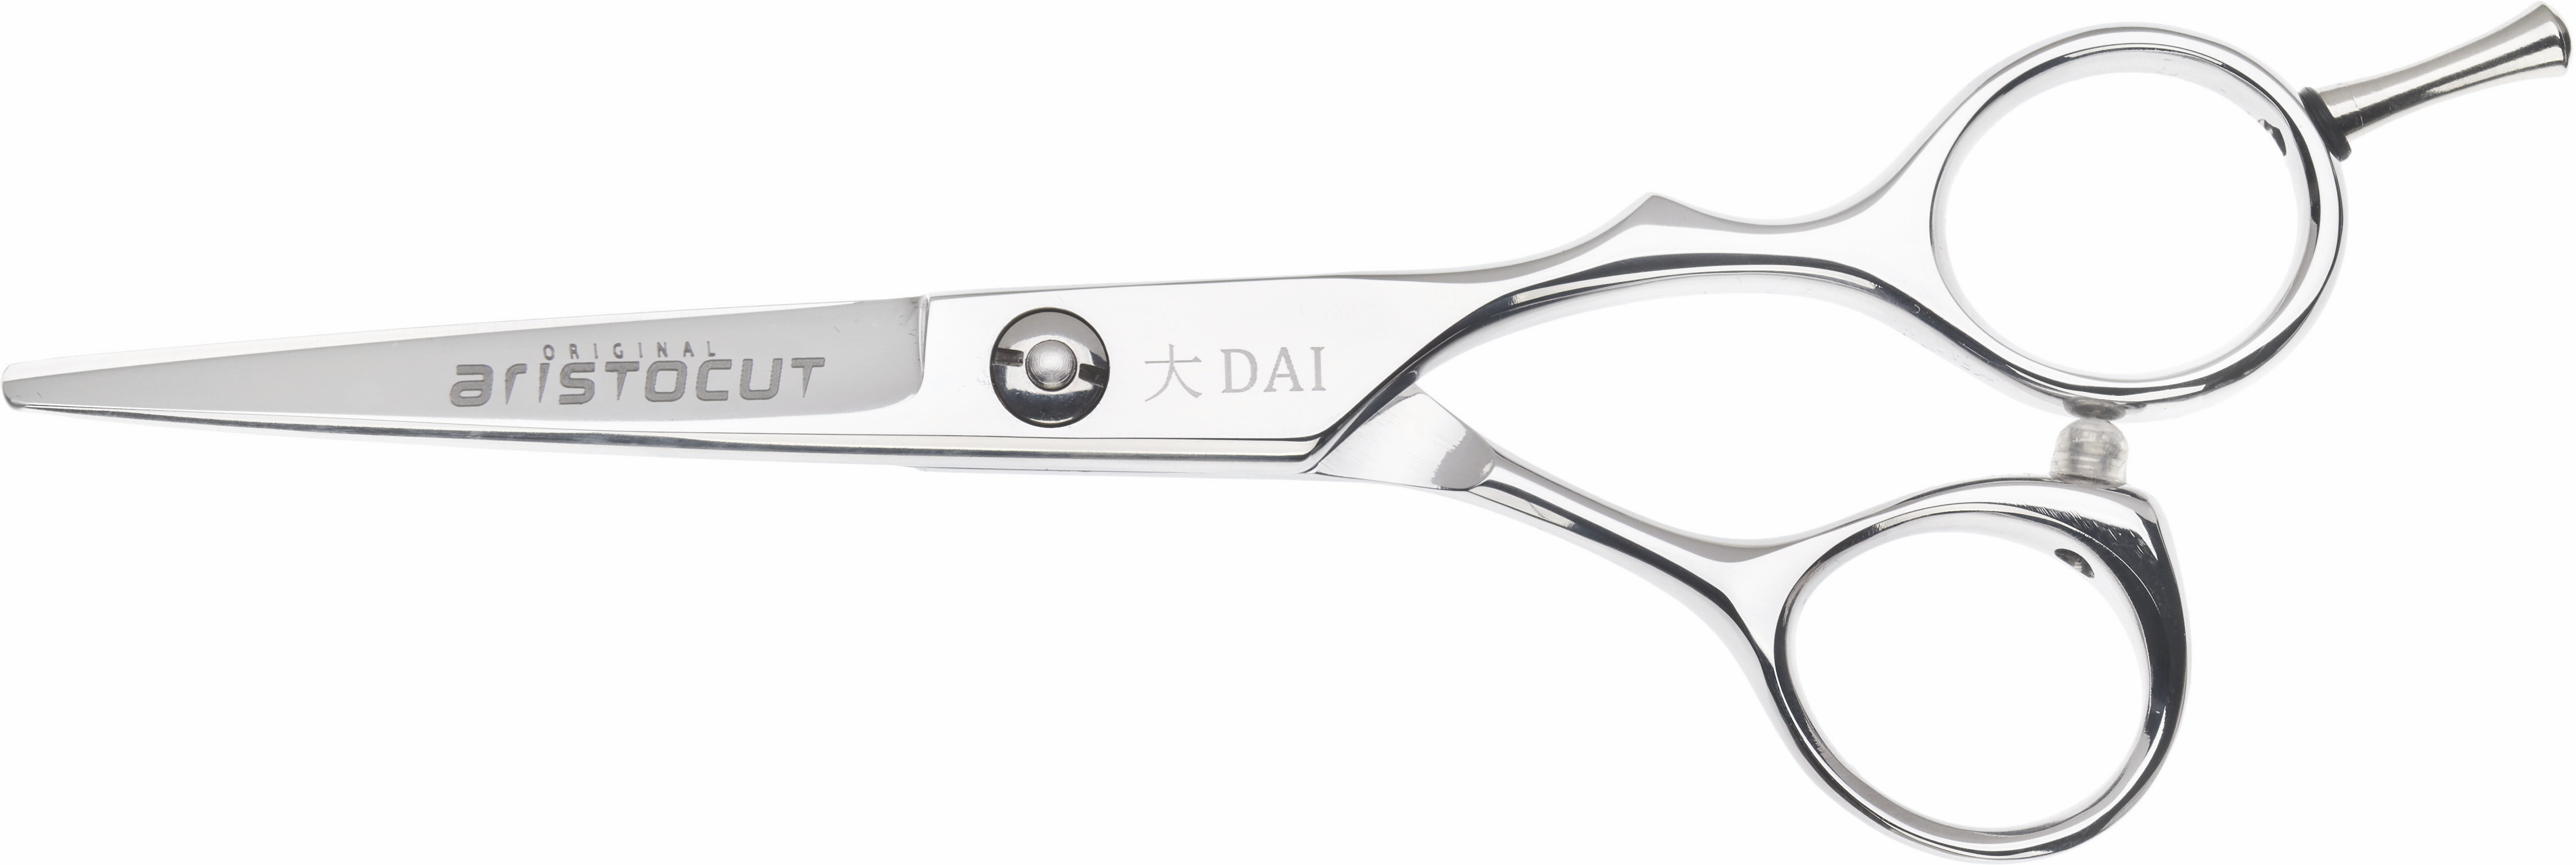 DAI Hair cutting scissors